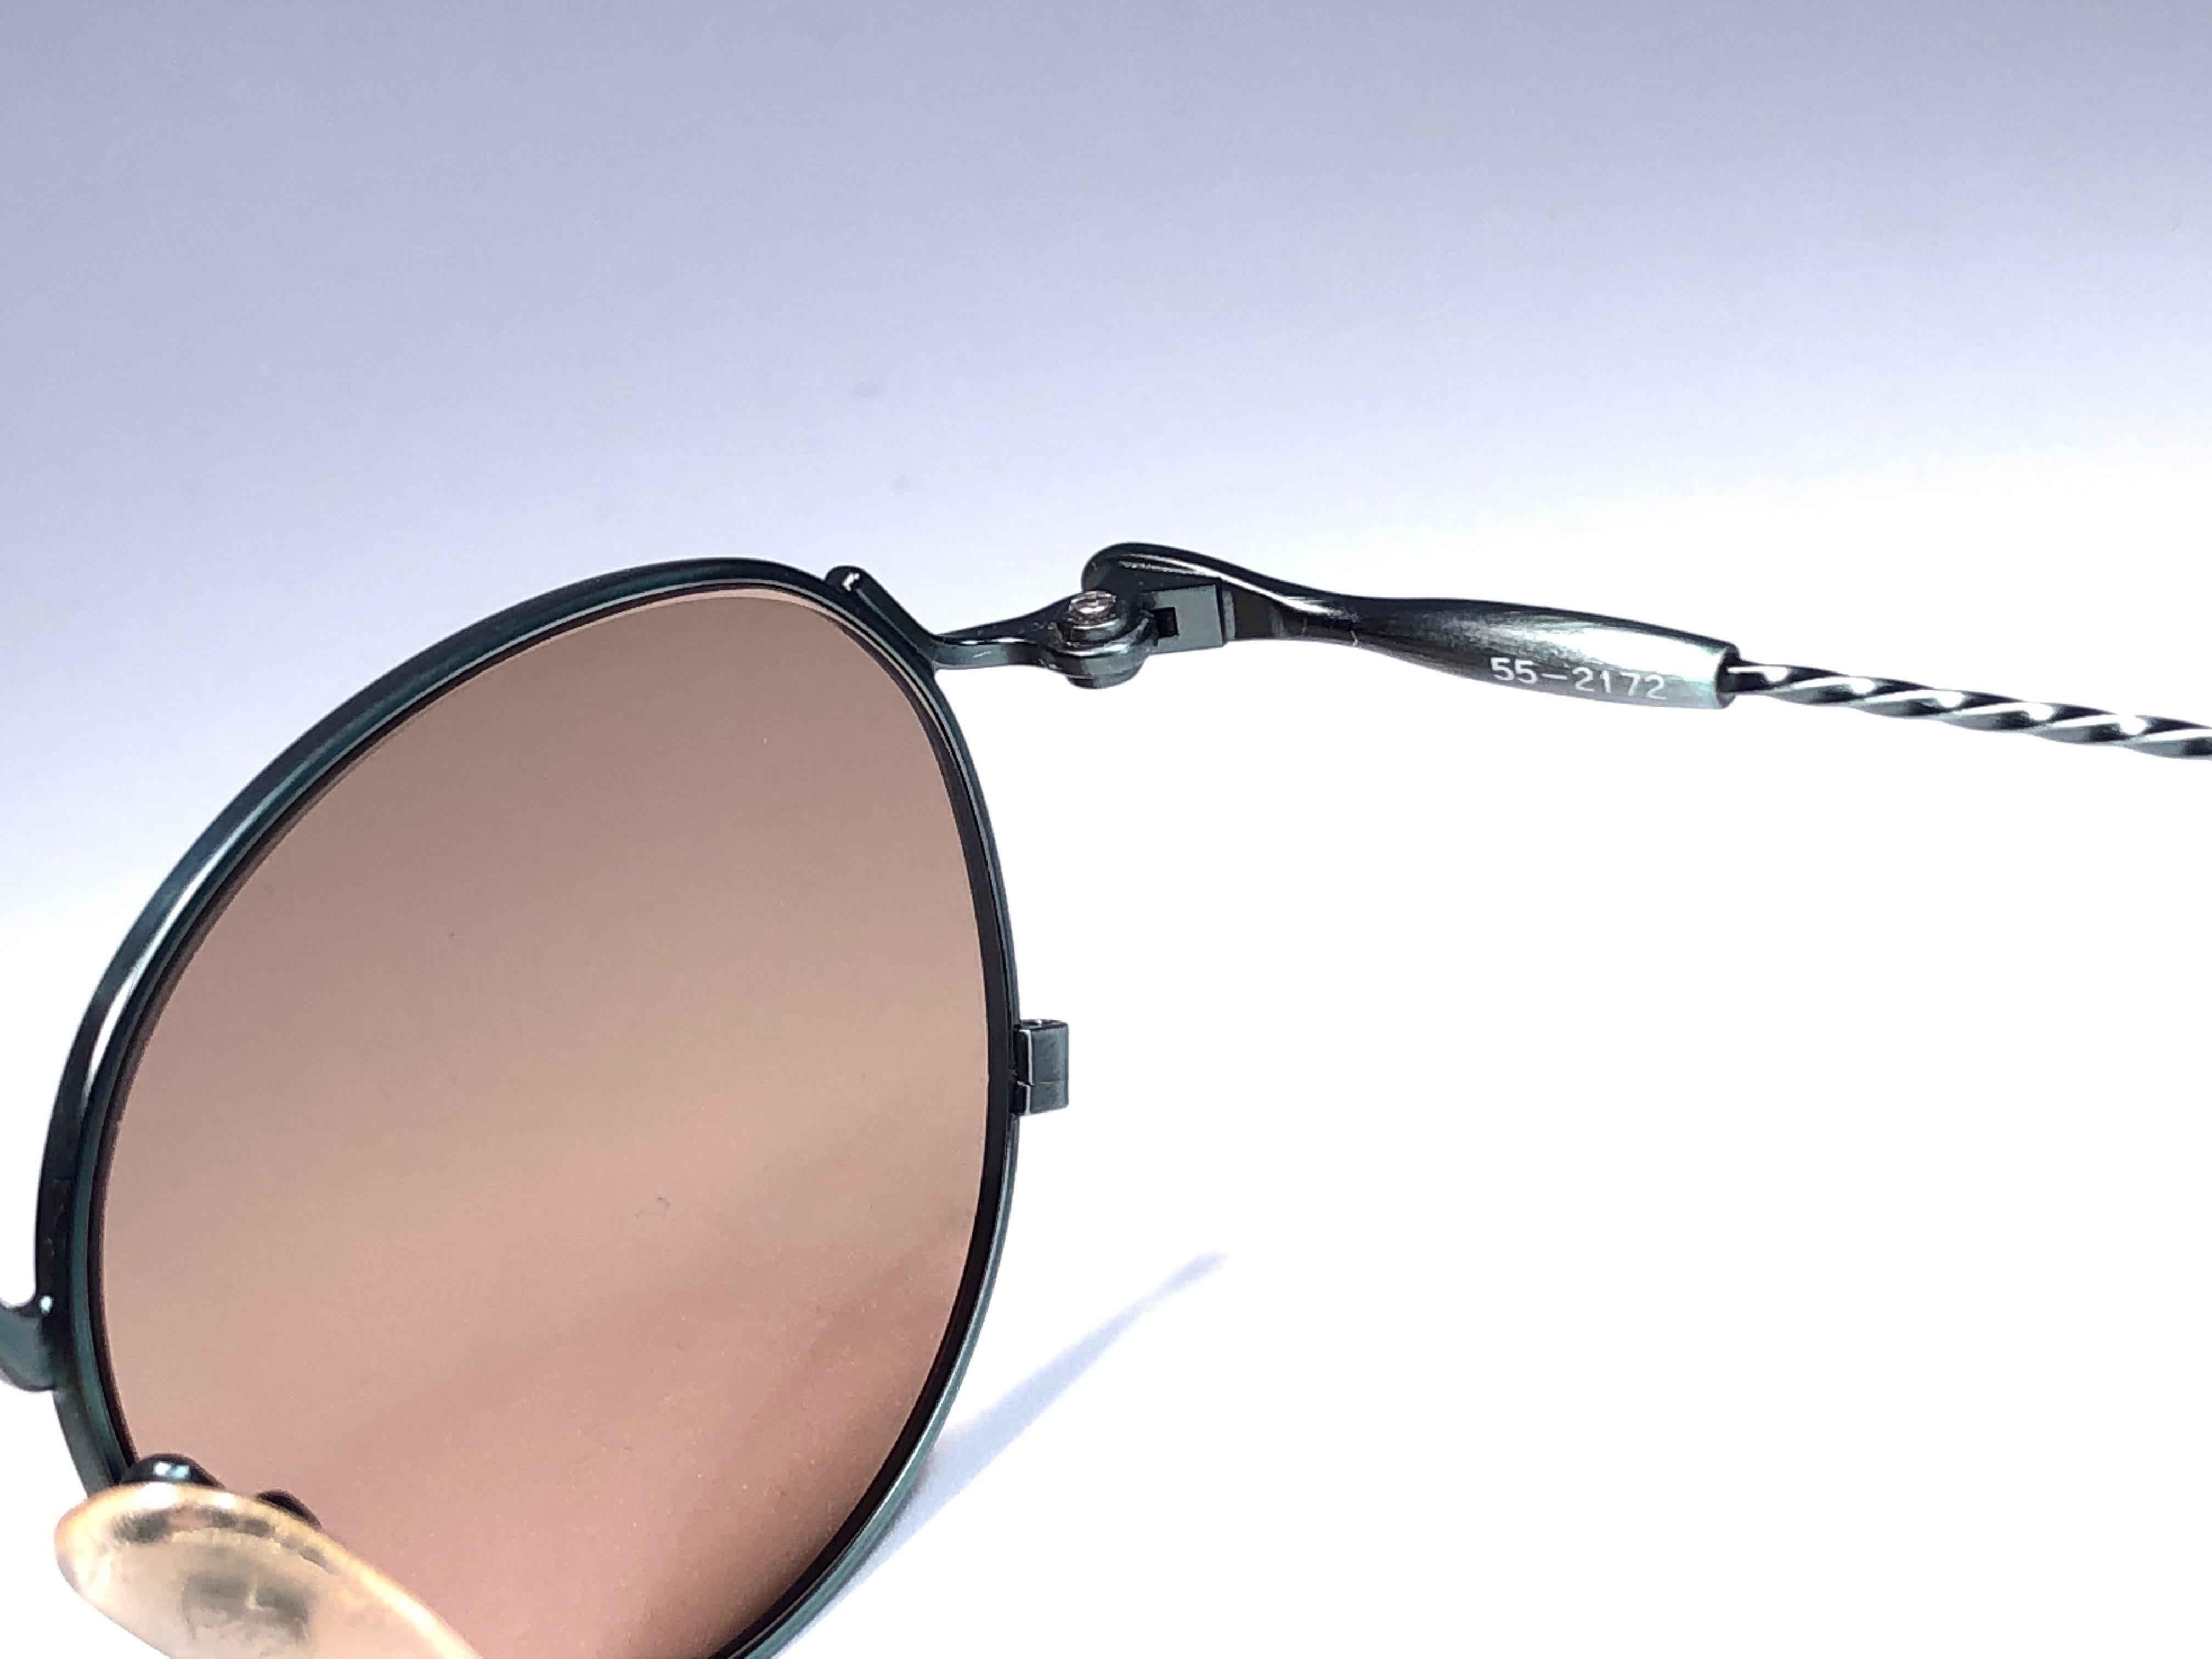 &New Jean Paul Gaultier Sonnenbrille mit grünem Metallrahmen.
Goldfarbene, verspiegelte Gläser, die einen tragbaren JPG-Look vervollständigen.

Erstaunliches Design mit starken, aber raffinierten Details.
Design und Herstellung in den 1990er